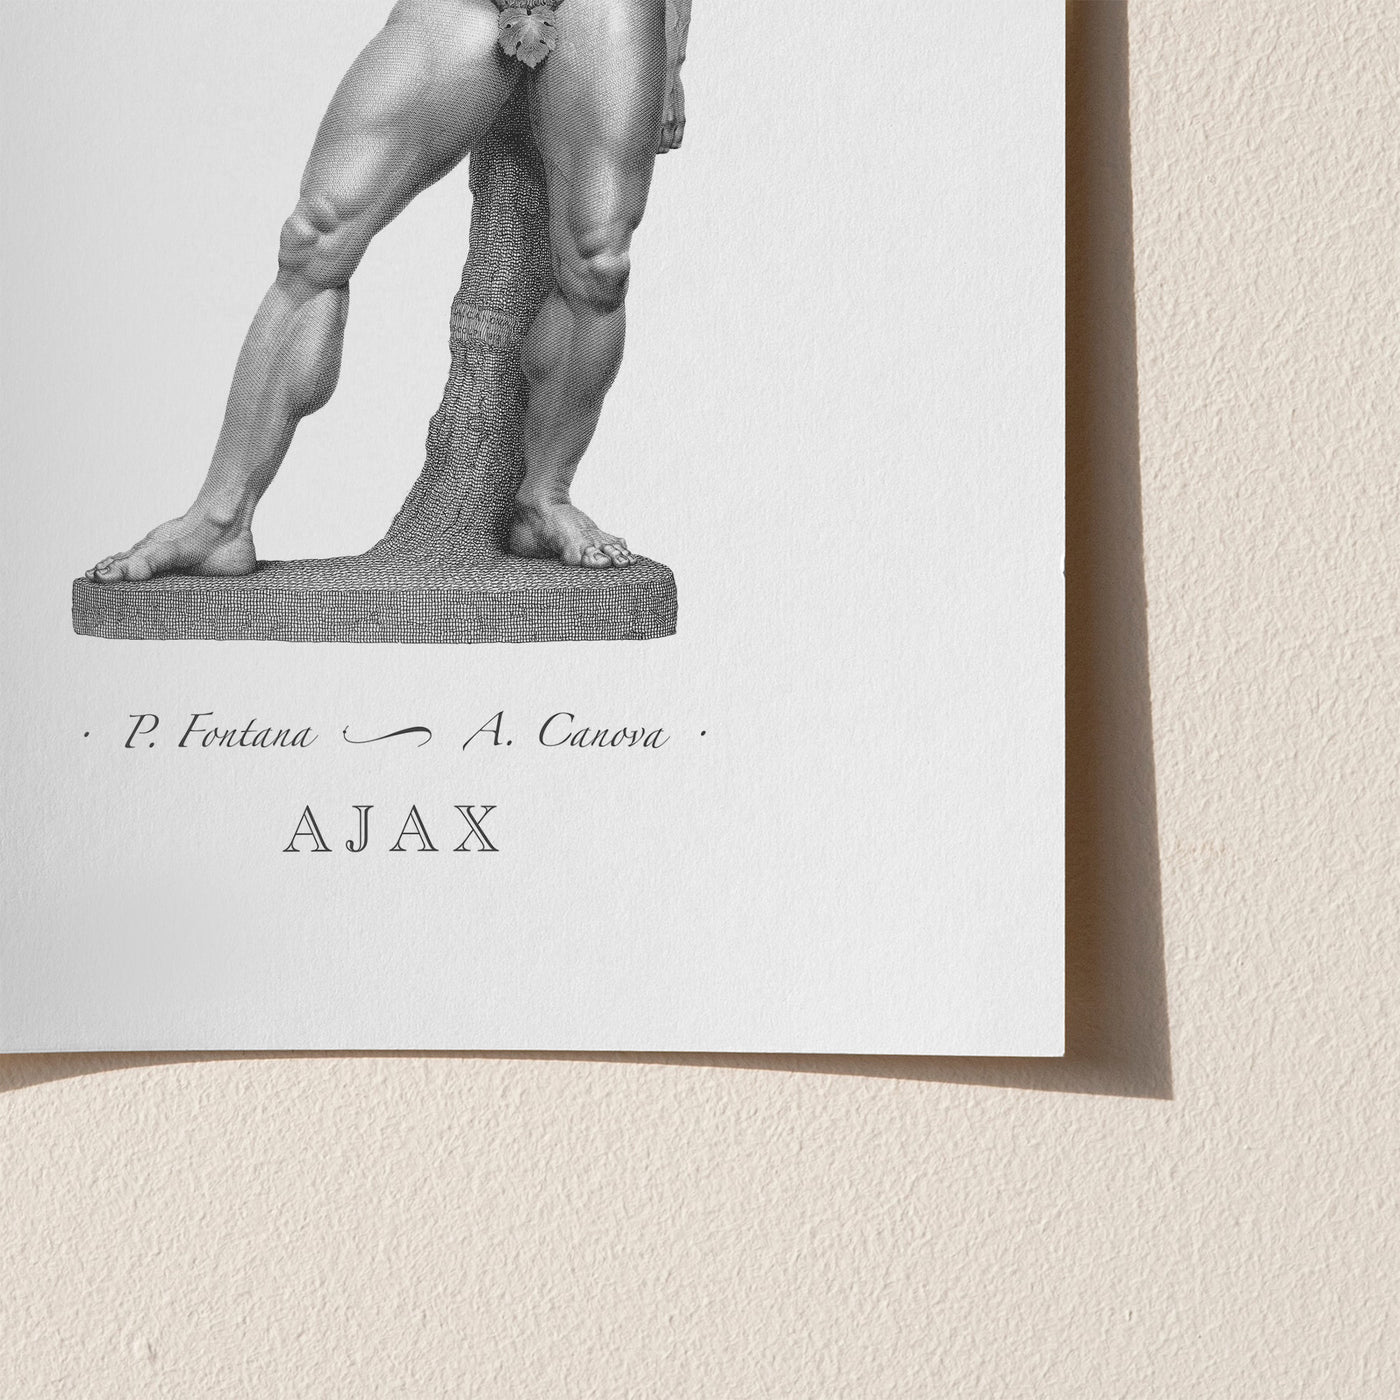 Ajax engraving